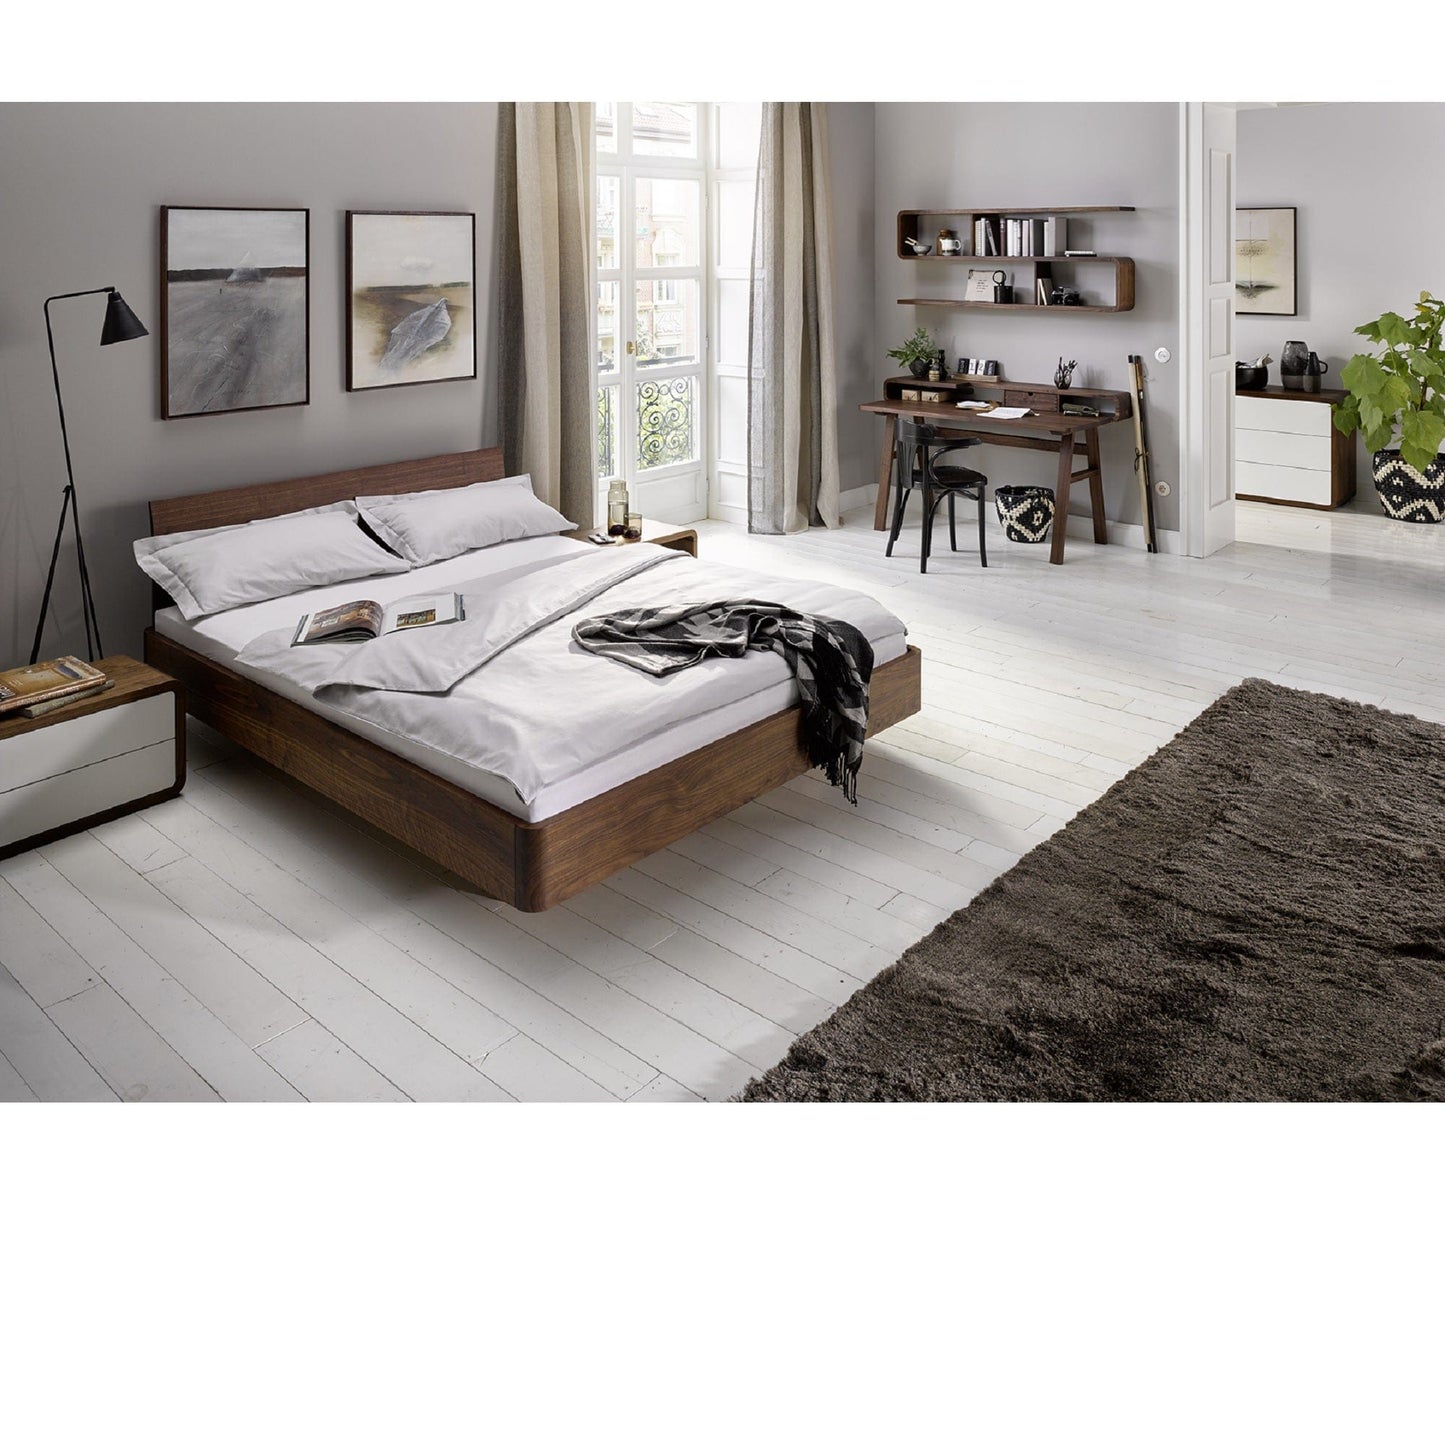 Holzmanufaktur Outlet Bett COM:CI mit Holzkufen und Rückenlehne, Nussbaum 140x200 cm